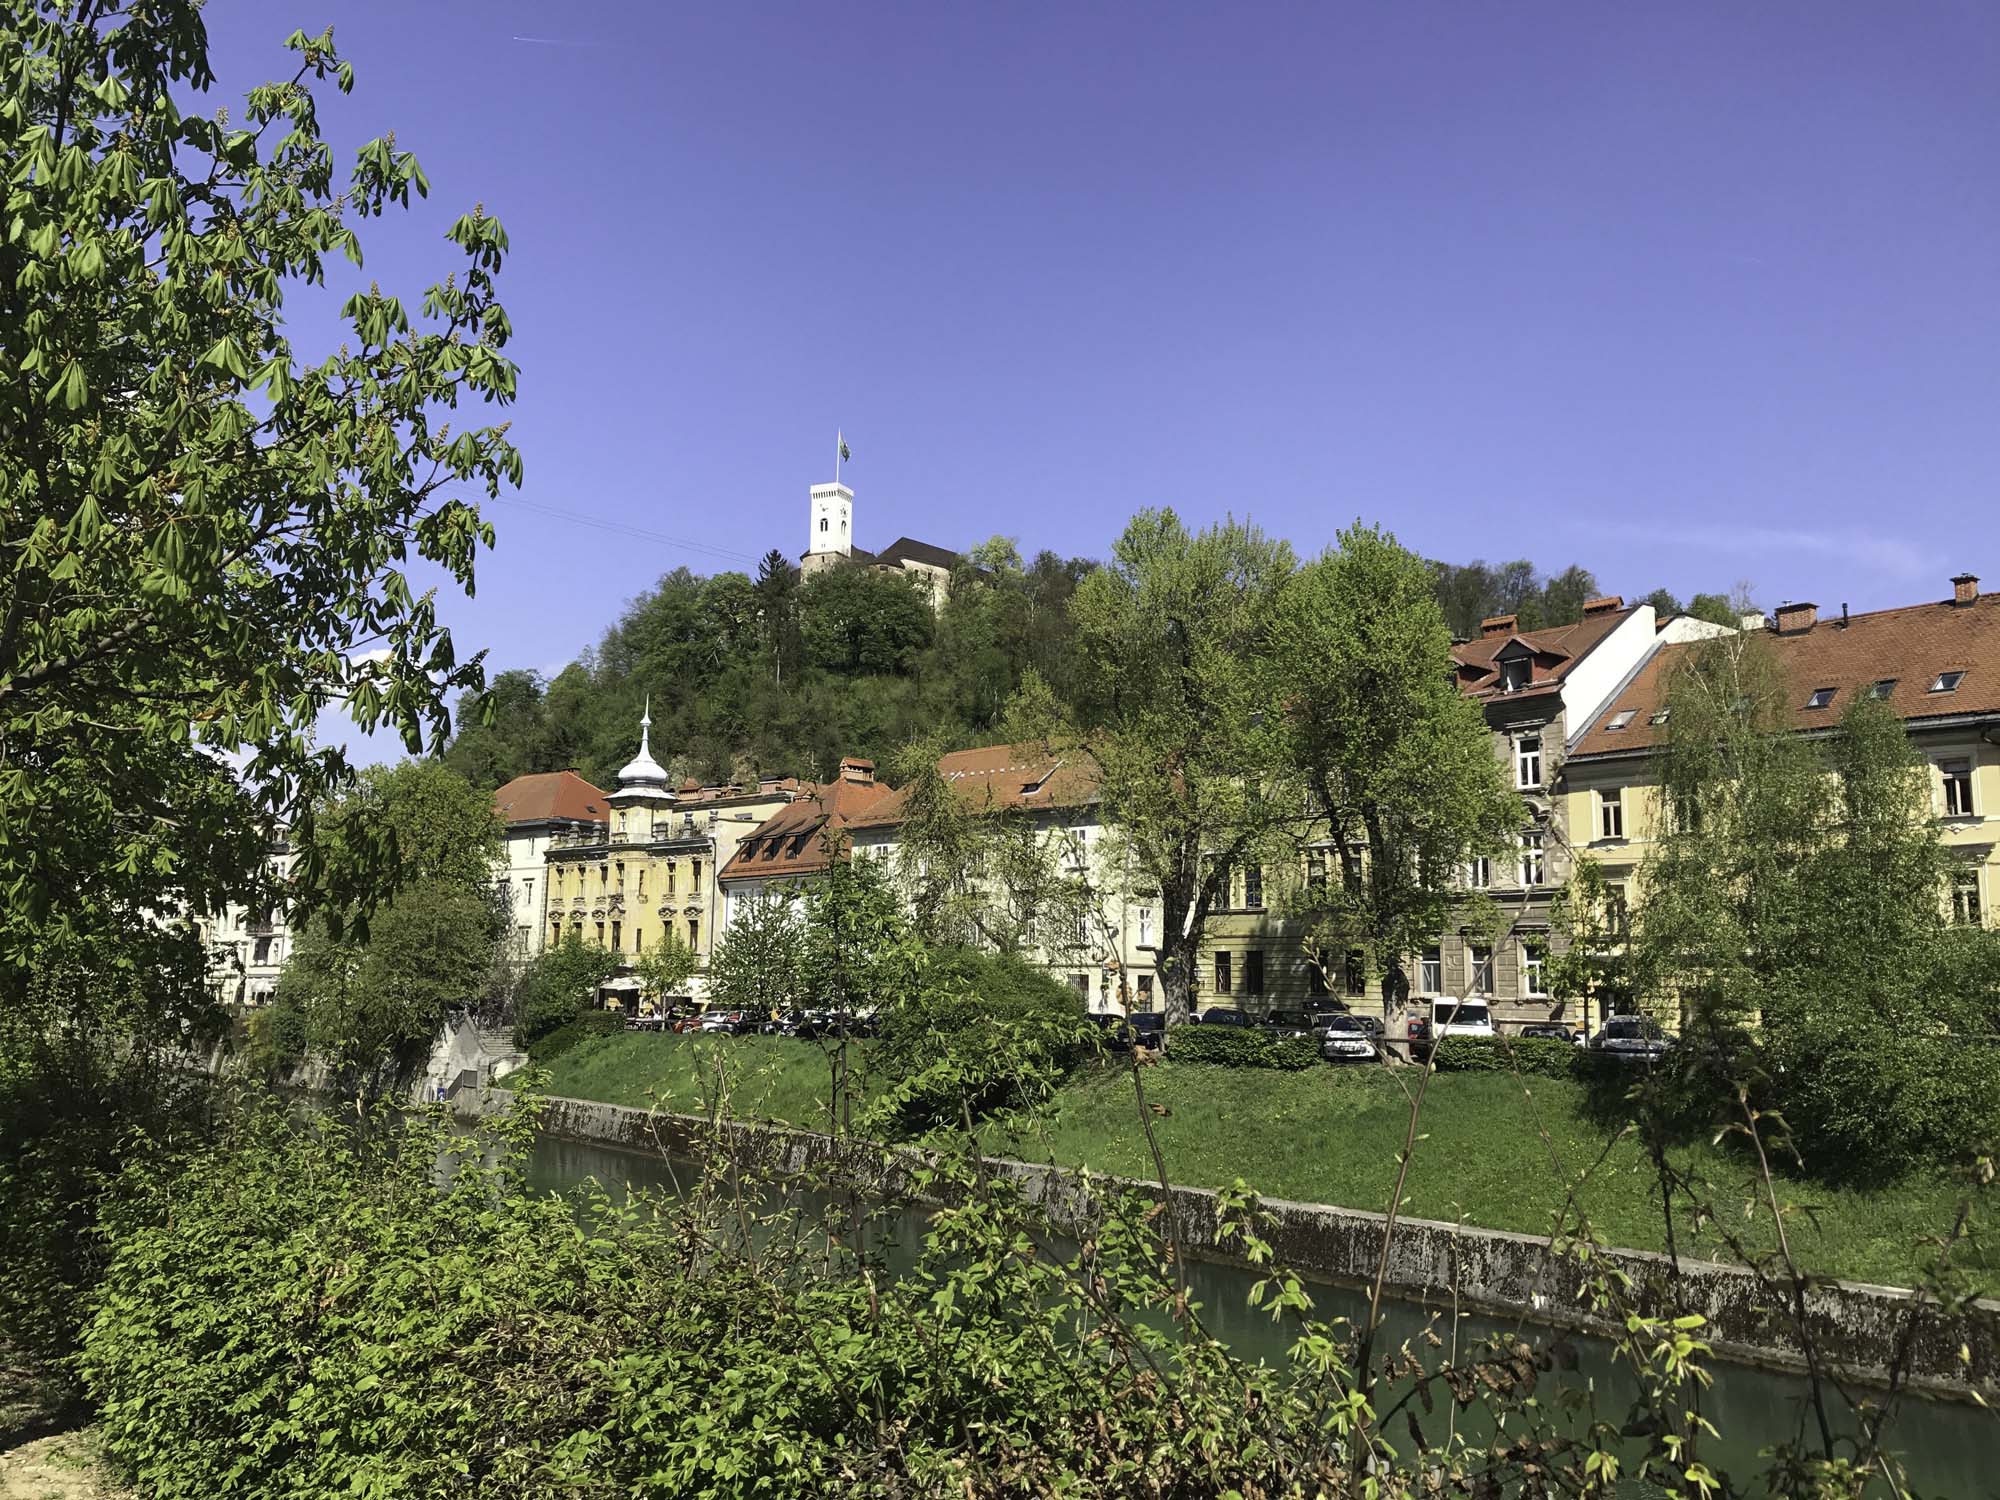 Burg Ljubljana